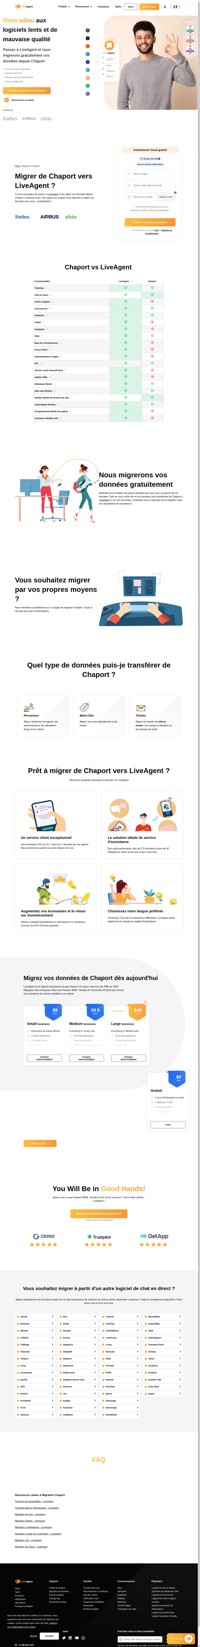 LiveAgent est une solution de help desk qui permet de connecter plusieurs canaux dans une seule interface. Migrez de Chaport vers LiveAgent et commencez à en tirer des avantages commerciaux.